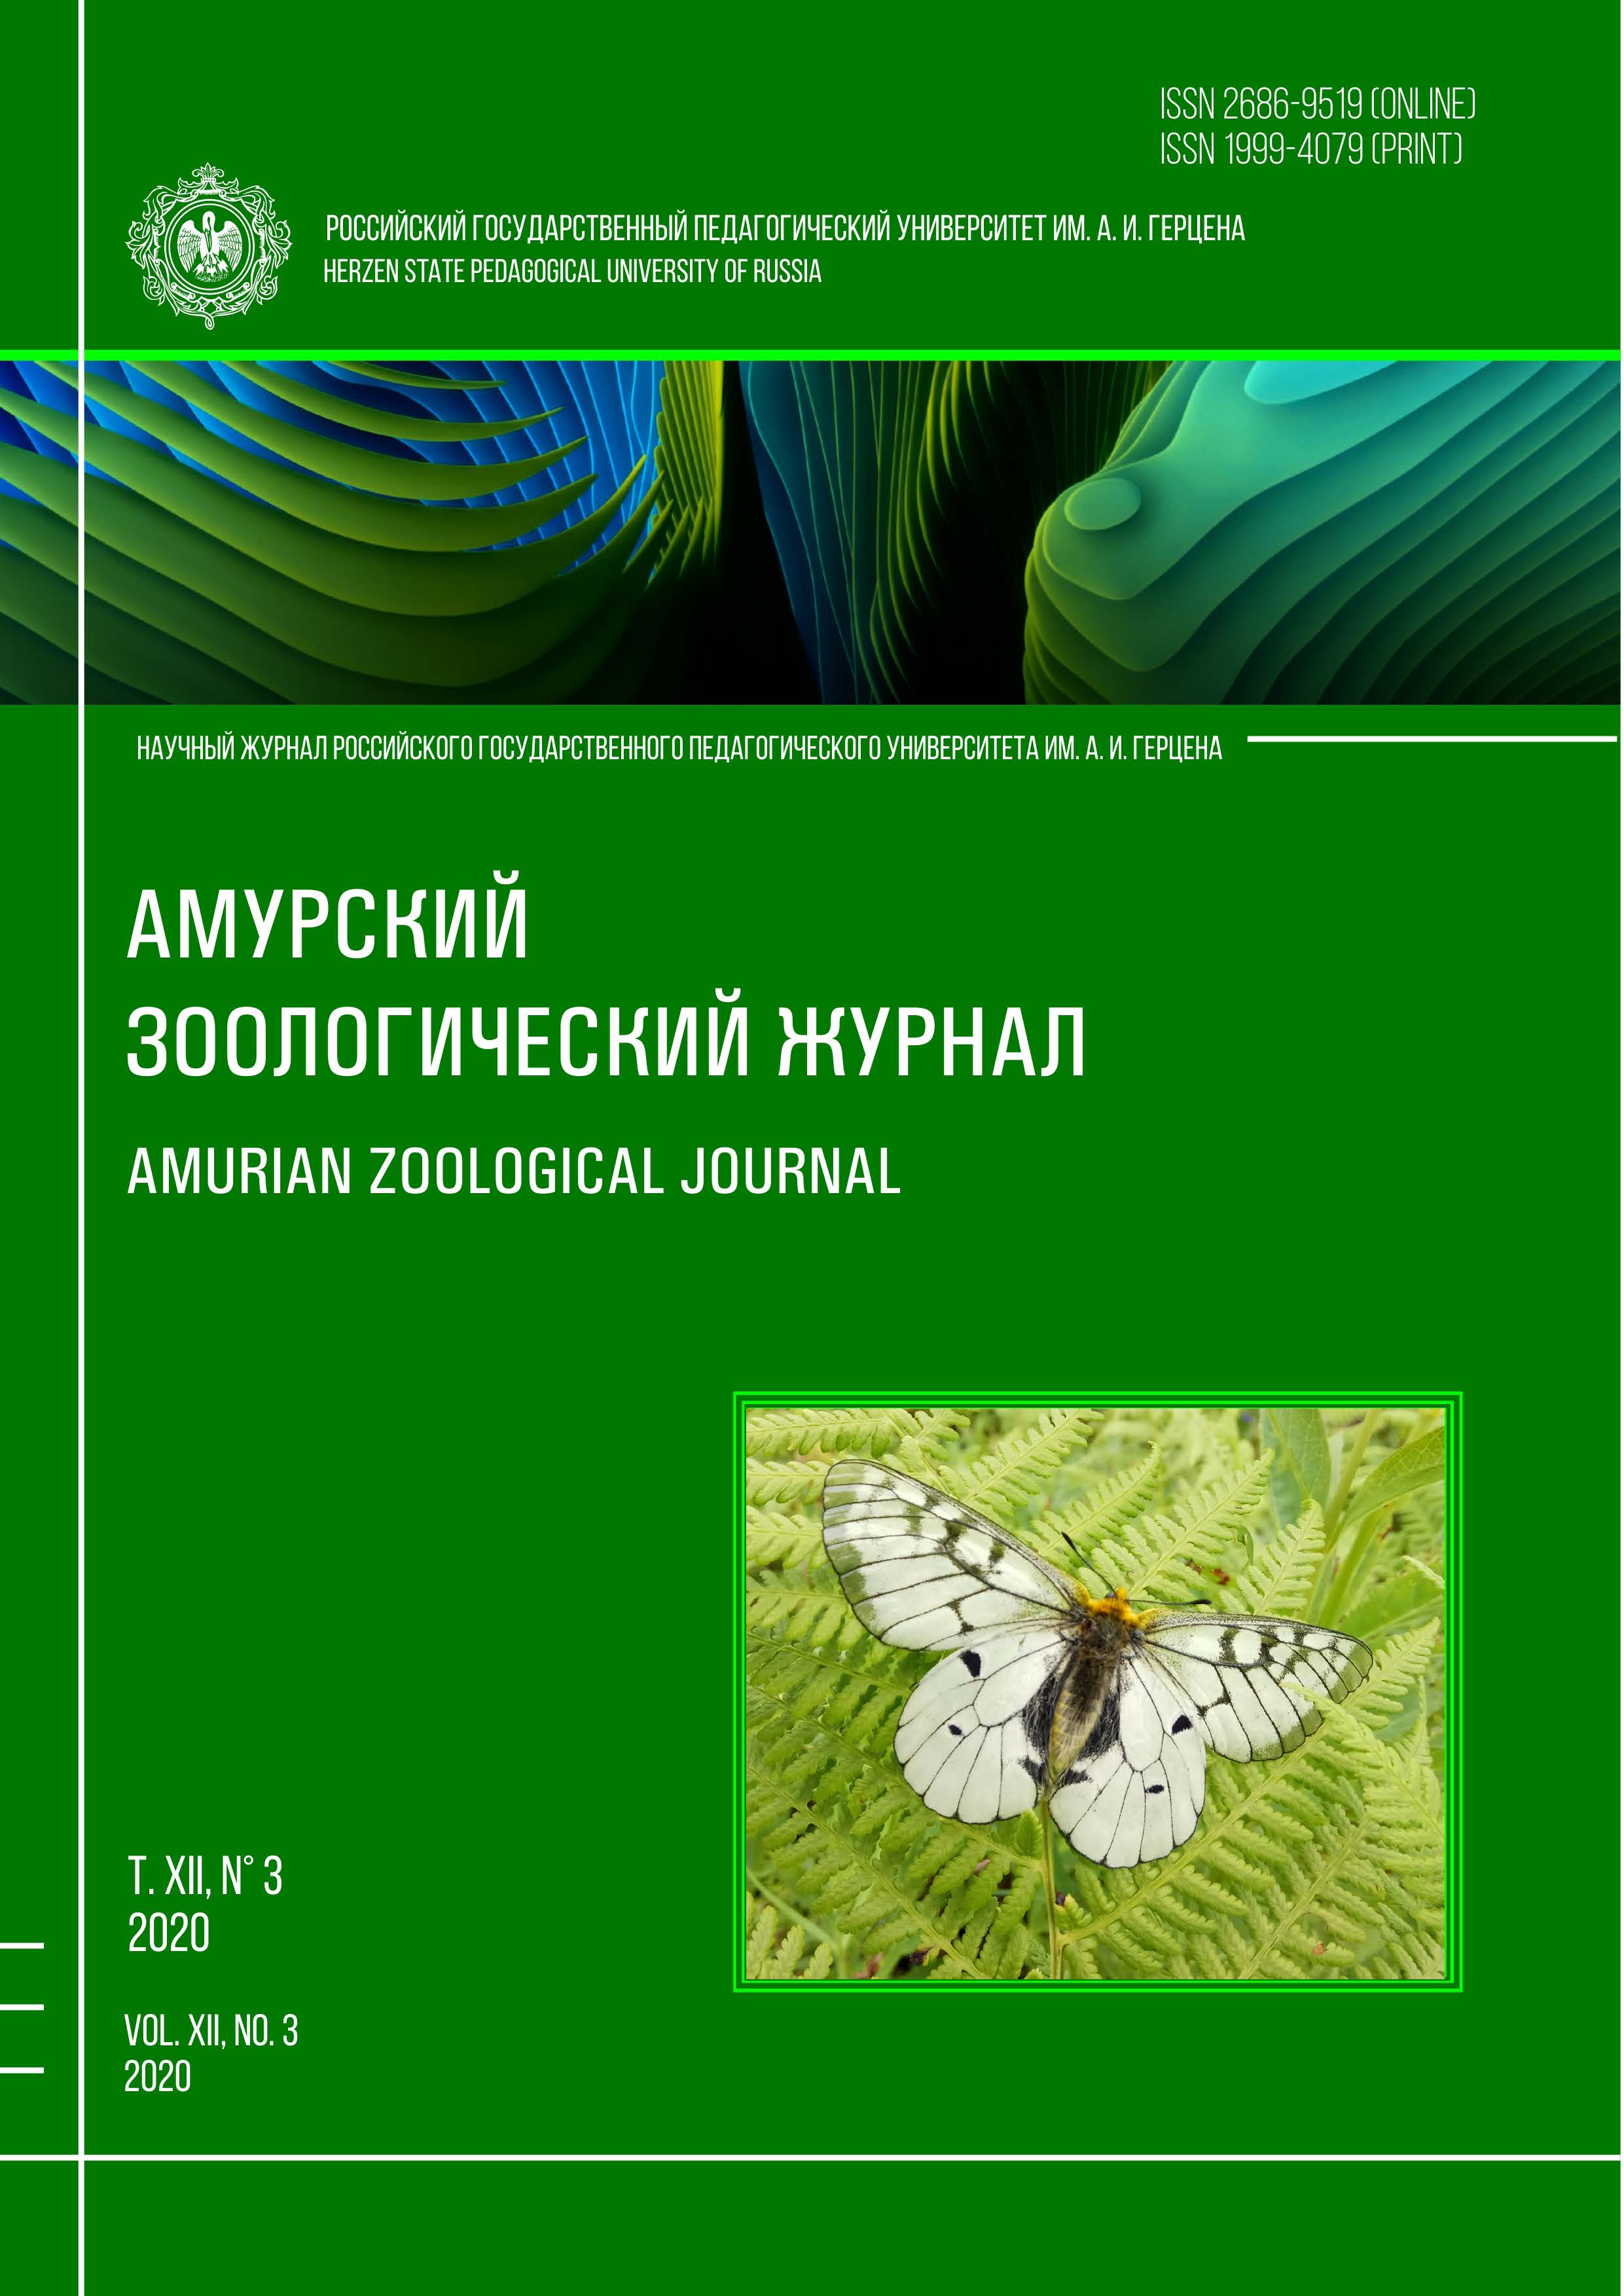 Обложка издания "Амурский зоологический журнал" (т. XII, № 3)